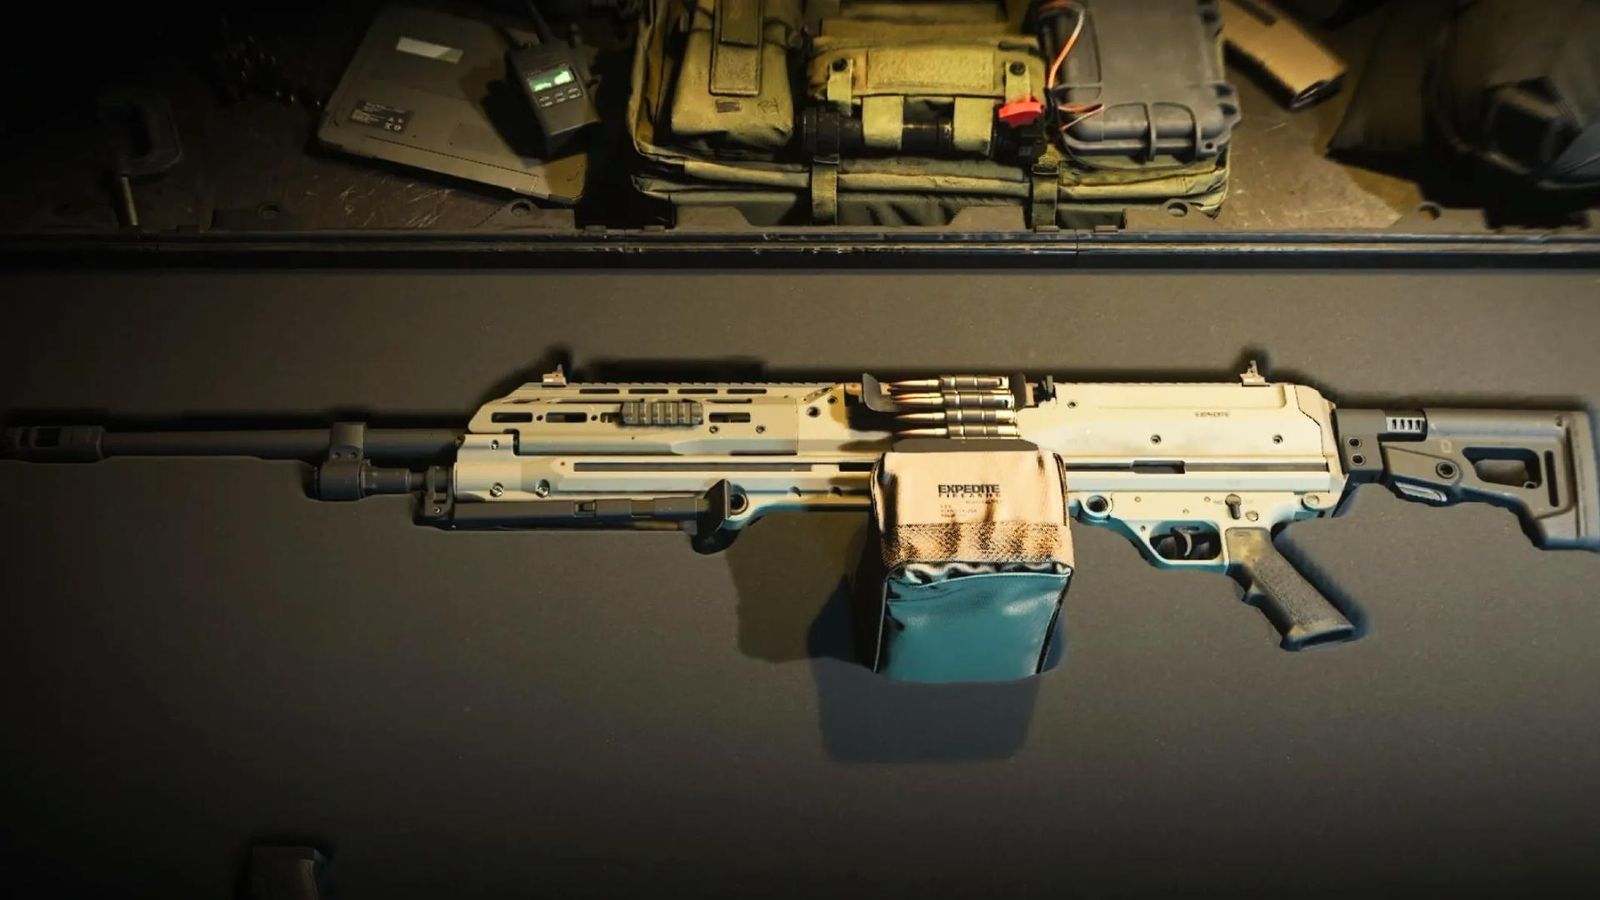 The RAAL MG in a gun case